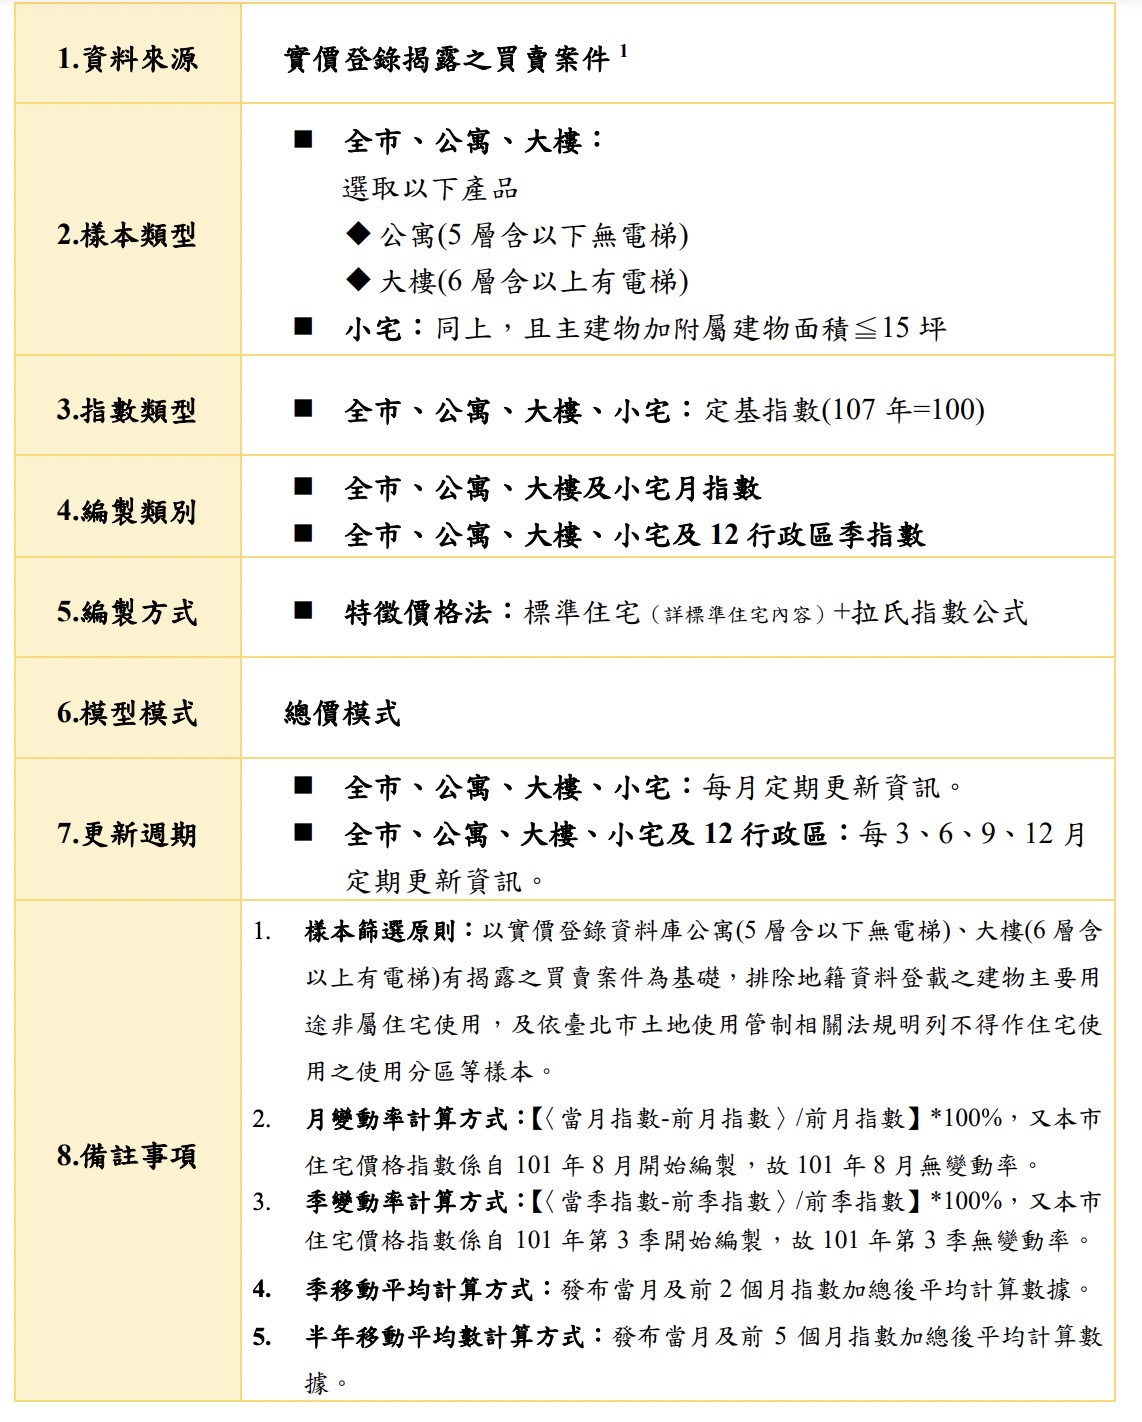 房價指數  台北市住宅價格指數